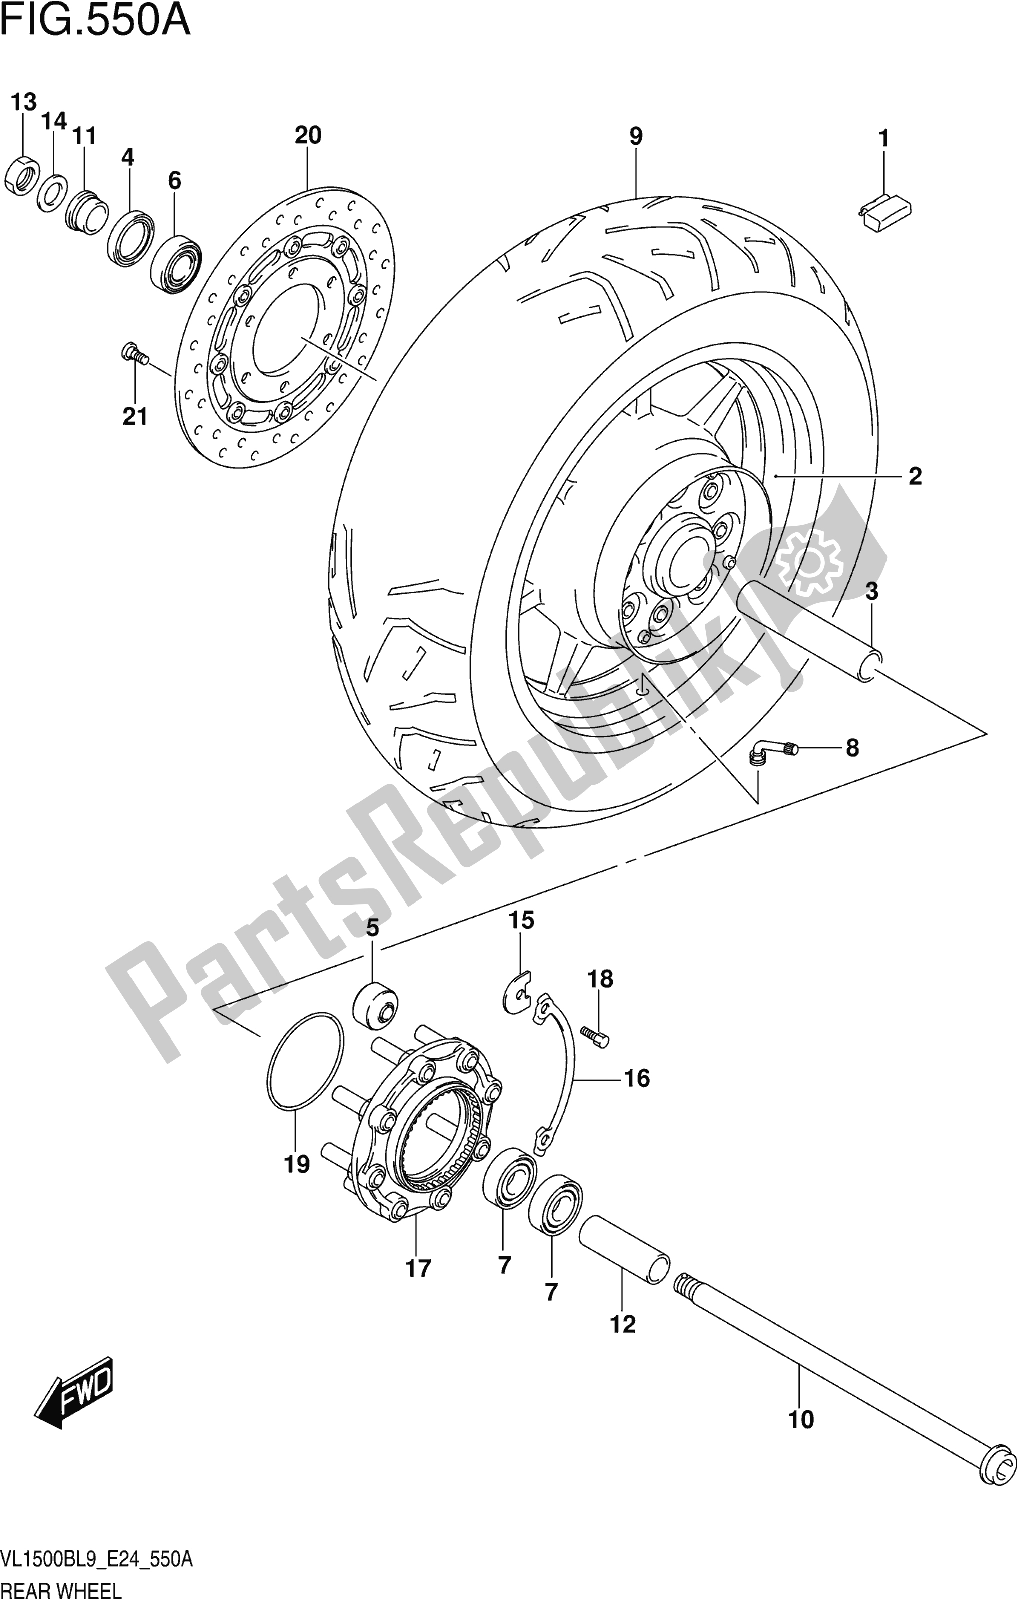 Toutes les pièces pour le Fig. 550a Rear Wheel du Suzuki VL 1500B 2019